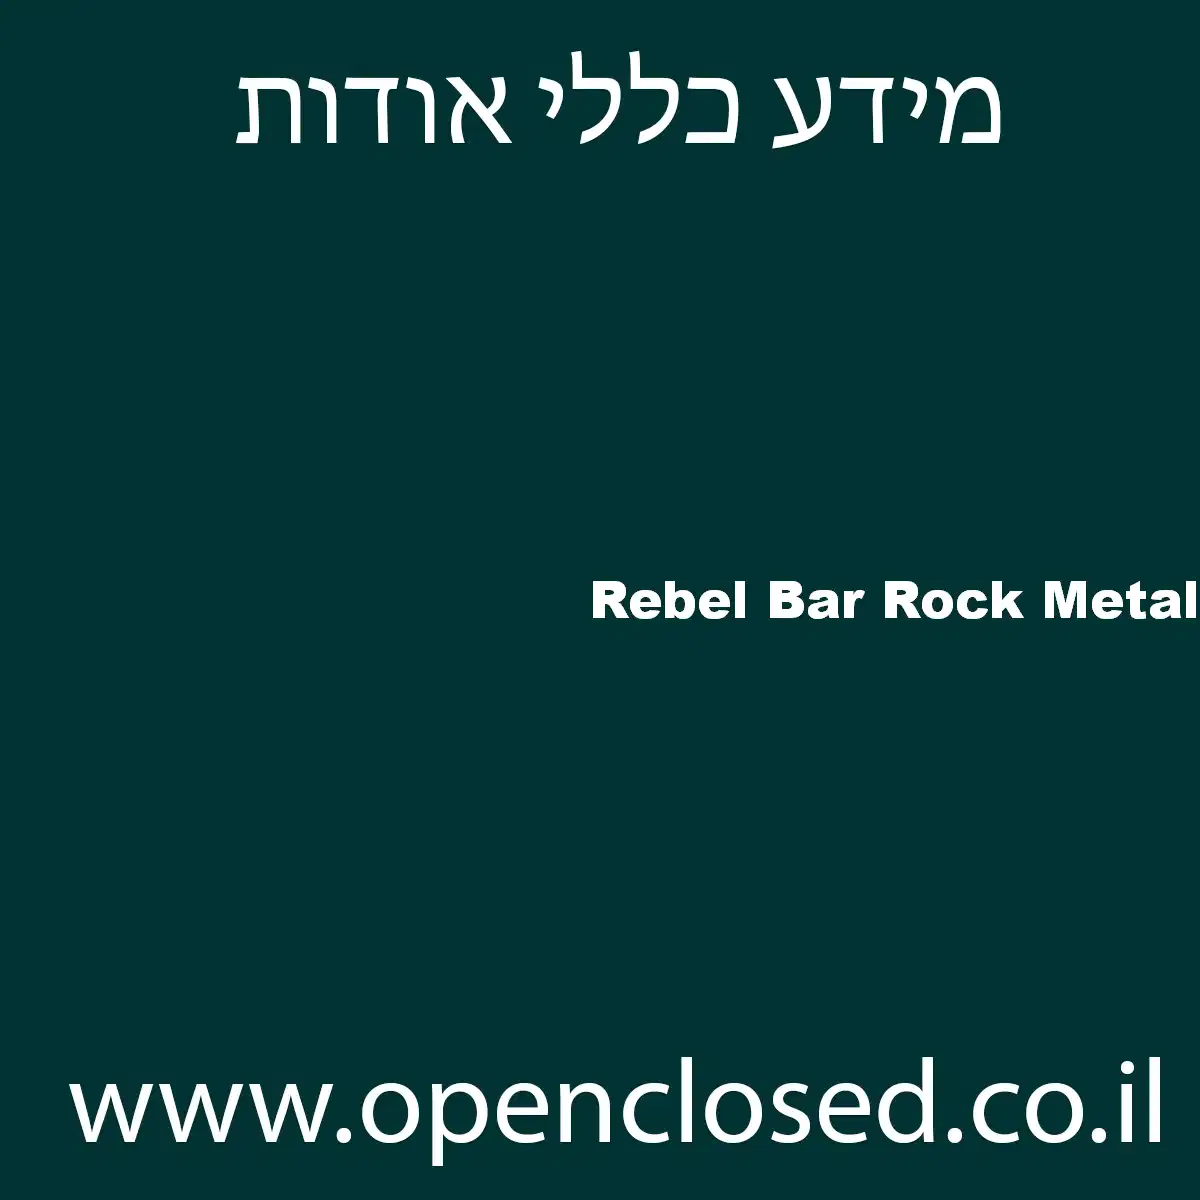 Rebel Bar Rock Metal